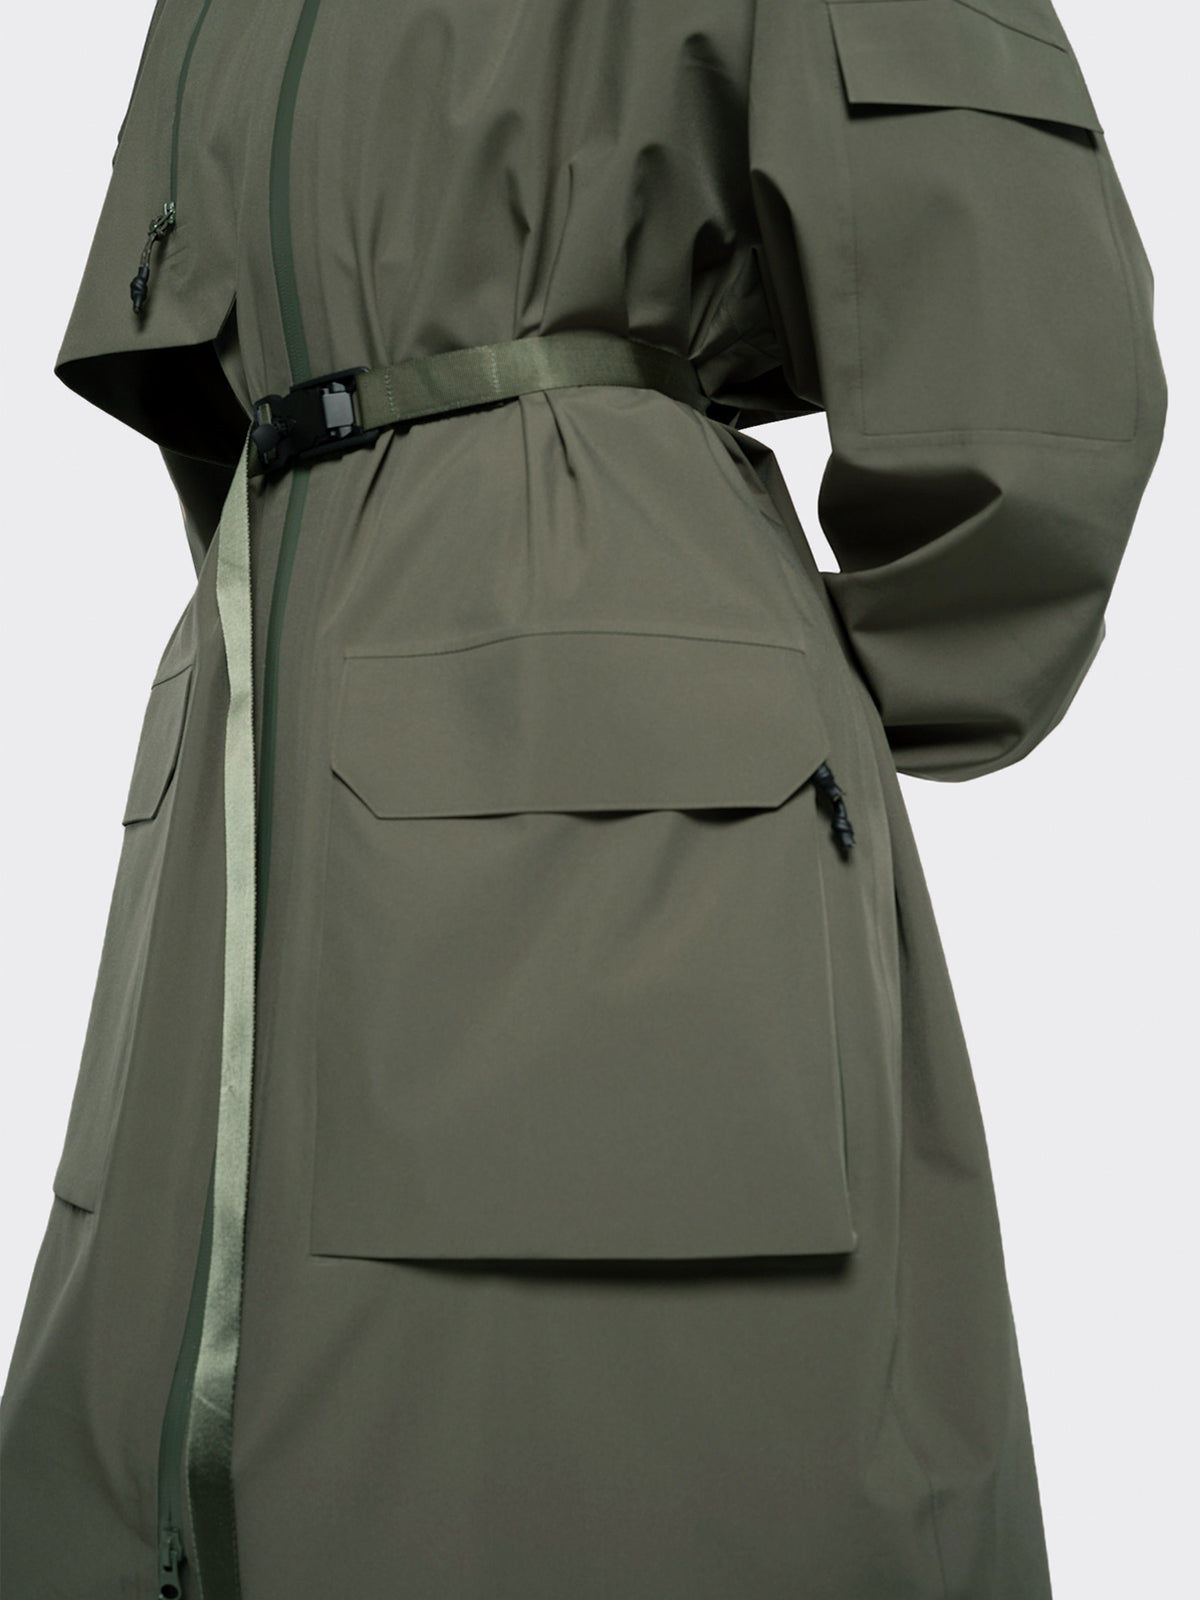 Klipra coat from Blæst in Dusty Green